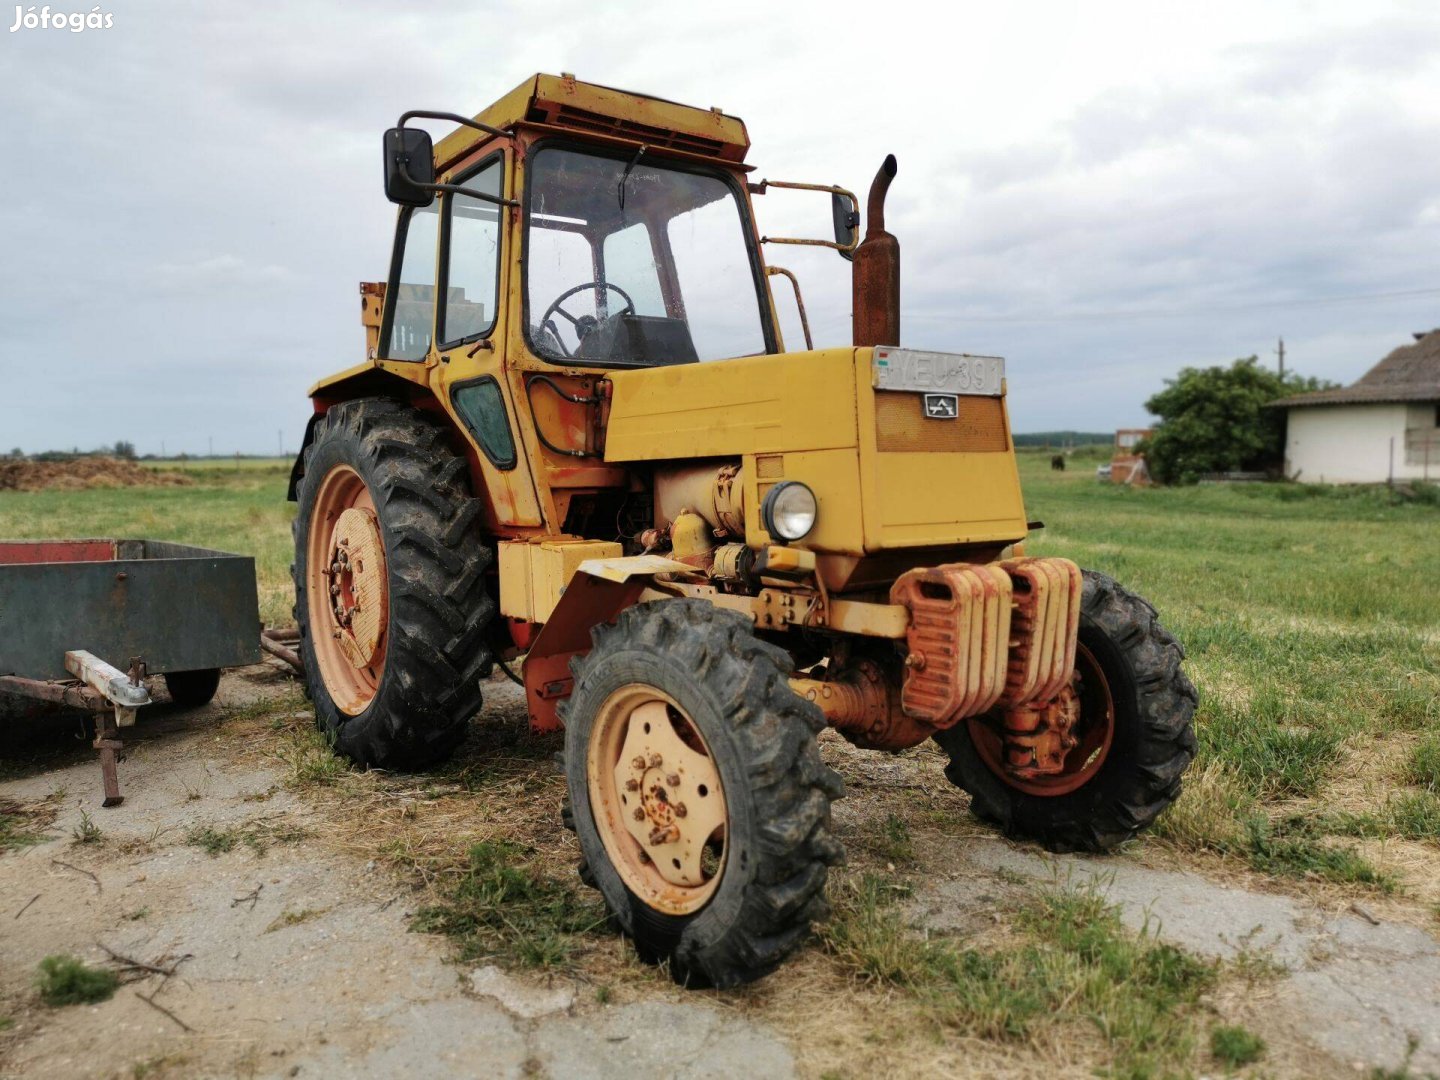 Eladó Traktor Ltz 55a vagy cserélném Mtz-re